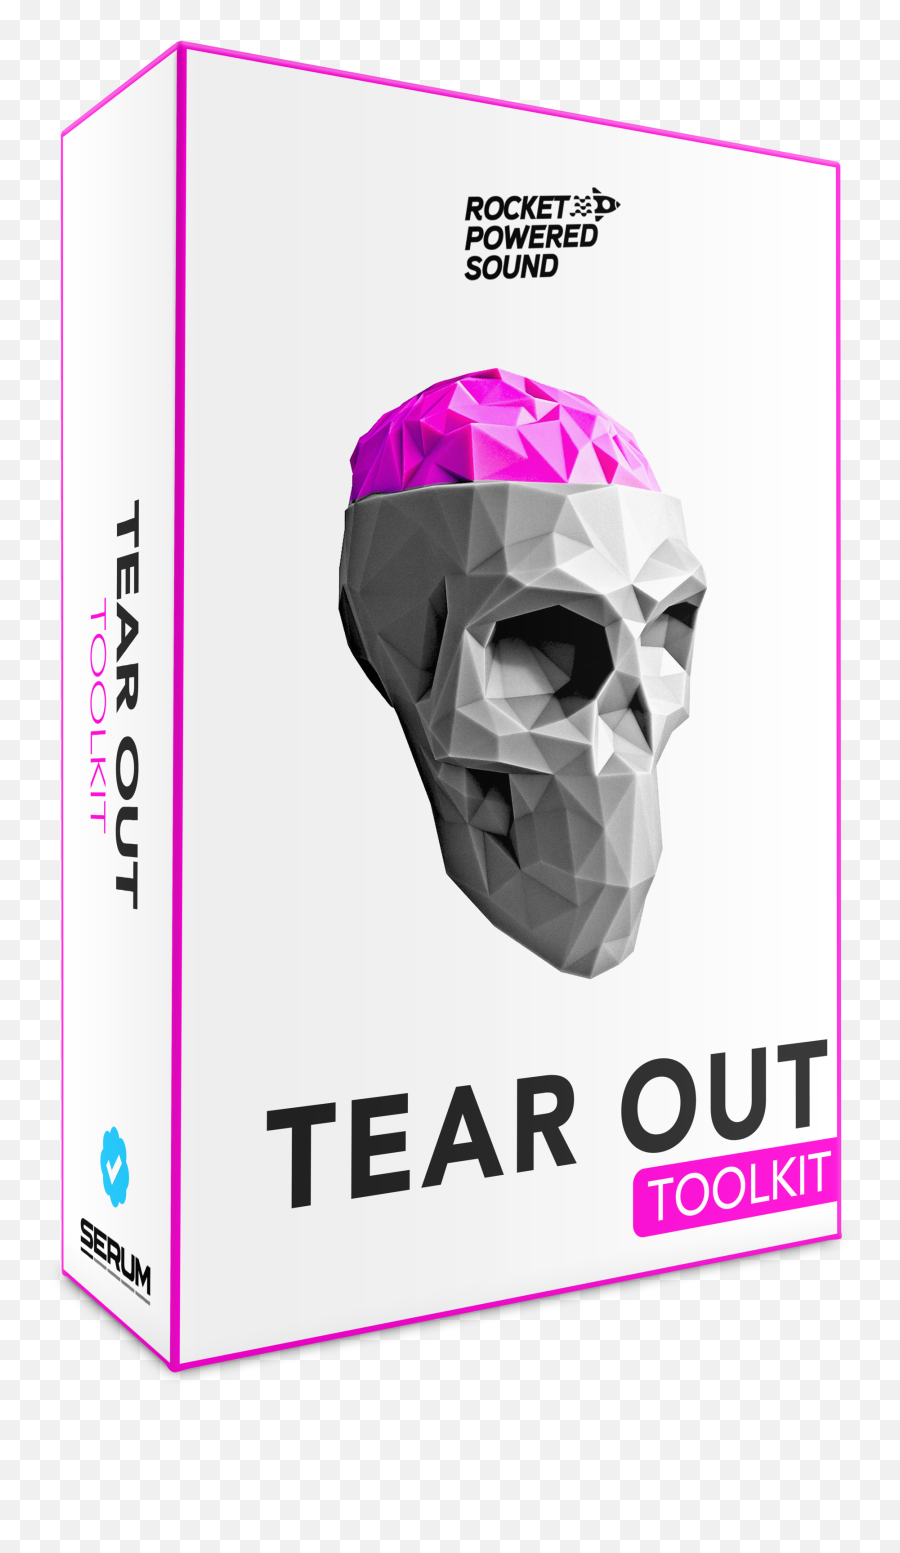 Tear Out Toolkit - Skull Clipart Large Size Png Image Pikpng Dot Emoji,Teardrop Emoji Transparent